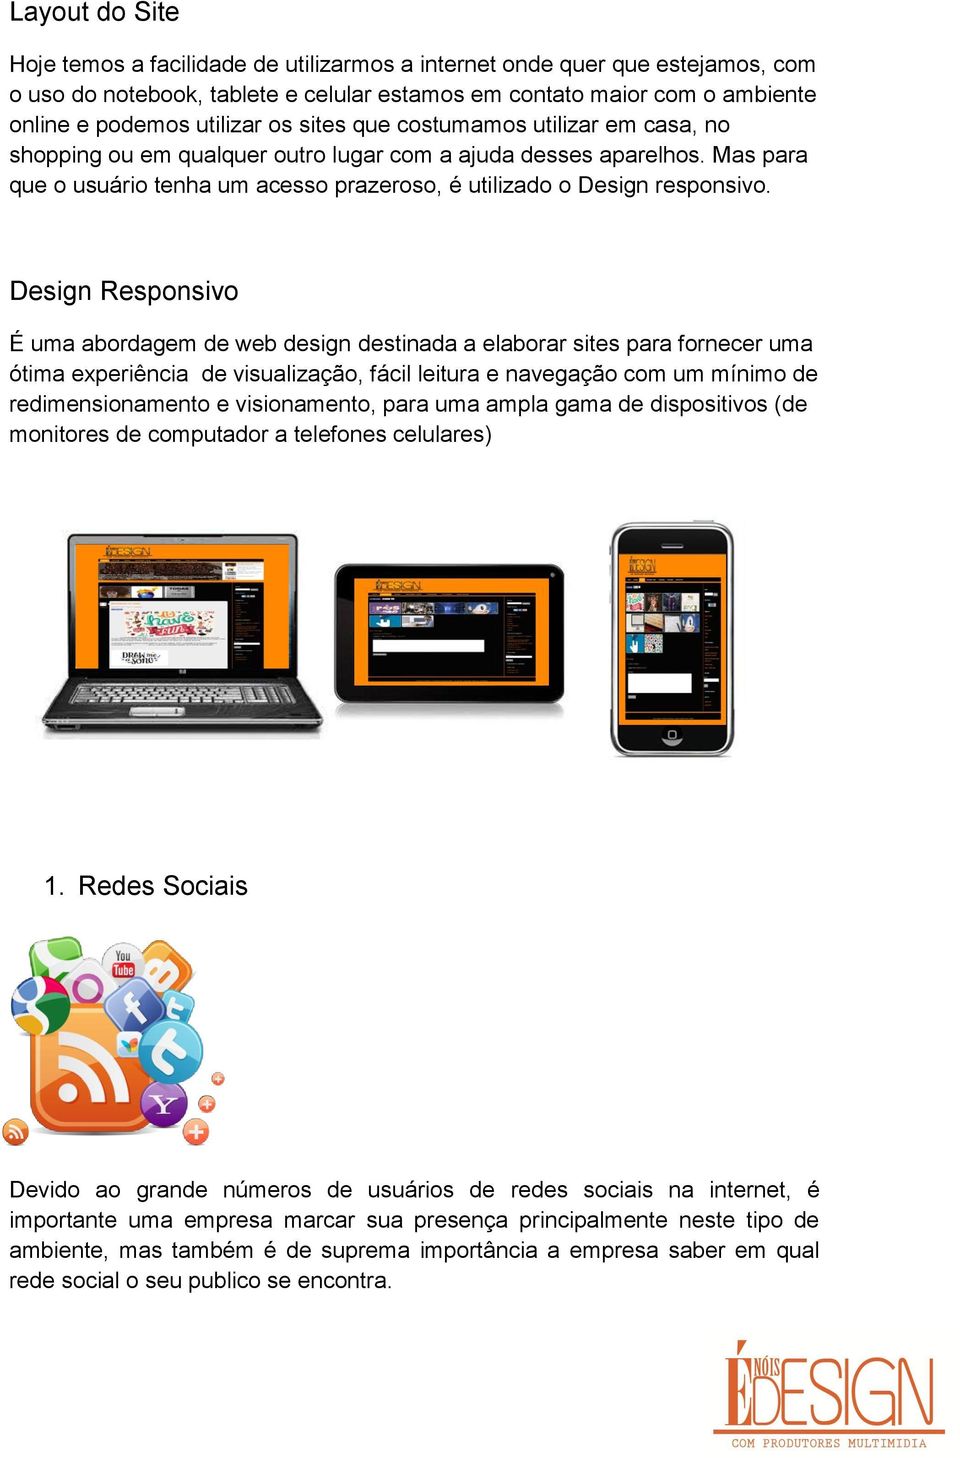 Design Responsivo É uma abordagem de web design destinada a elaborar sites para fornecer uma ótima experiência de visualização, fácil leitura e navegação com um mínimo de redimensionamento e